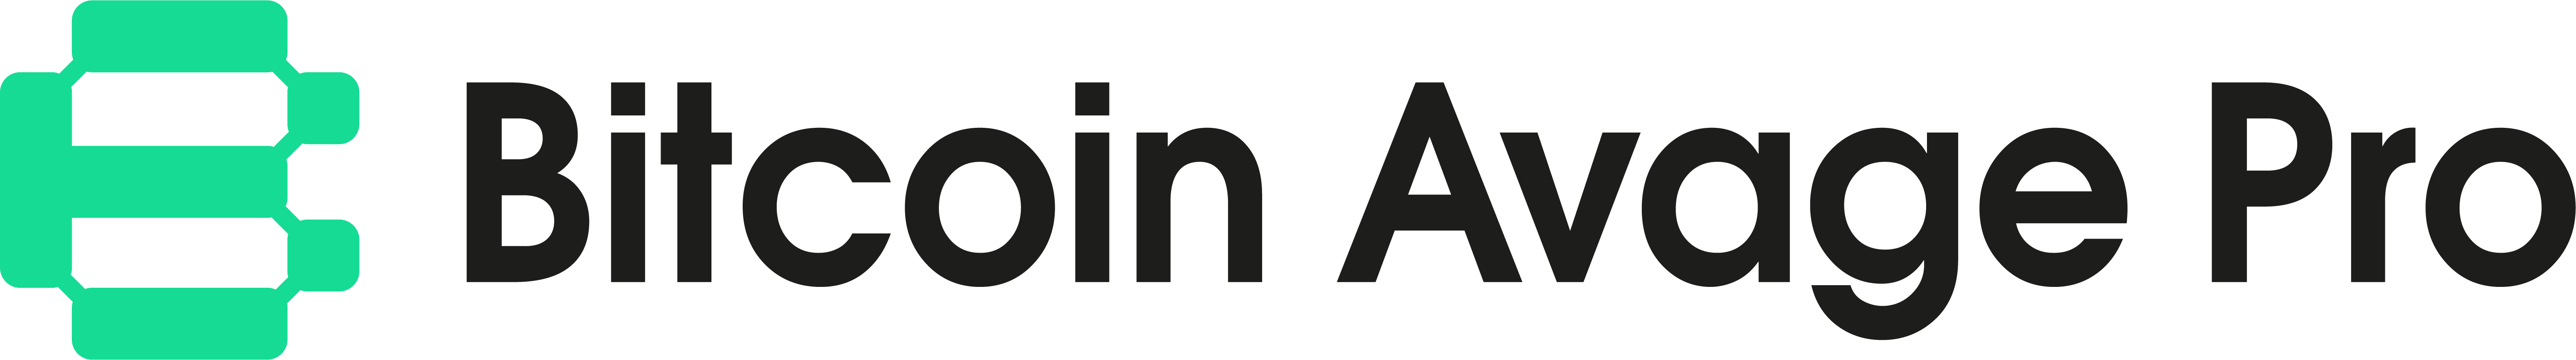 Bitcoin Avage Pro logo